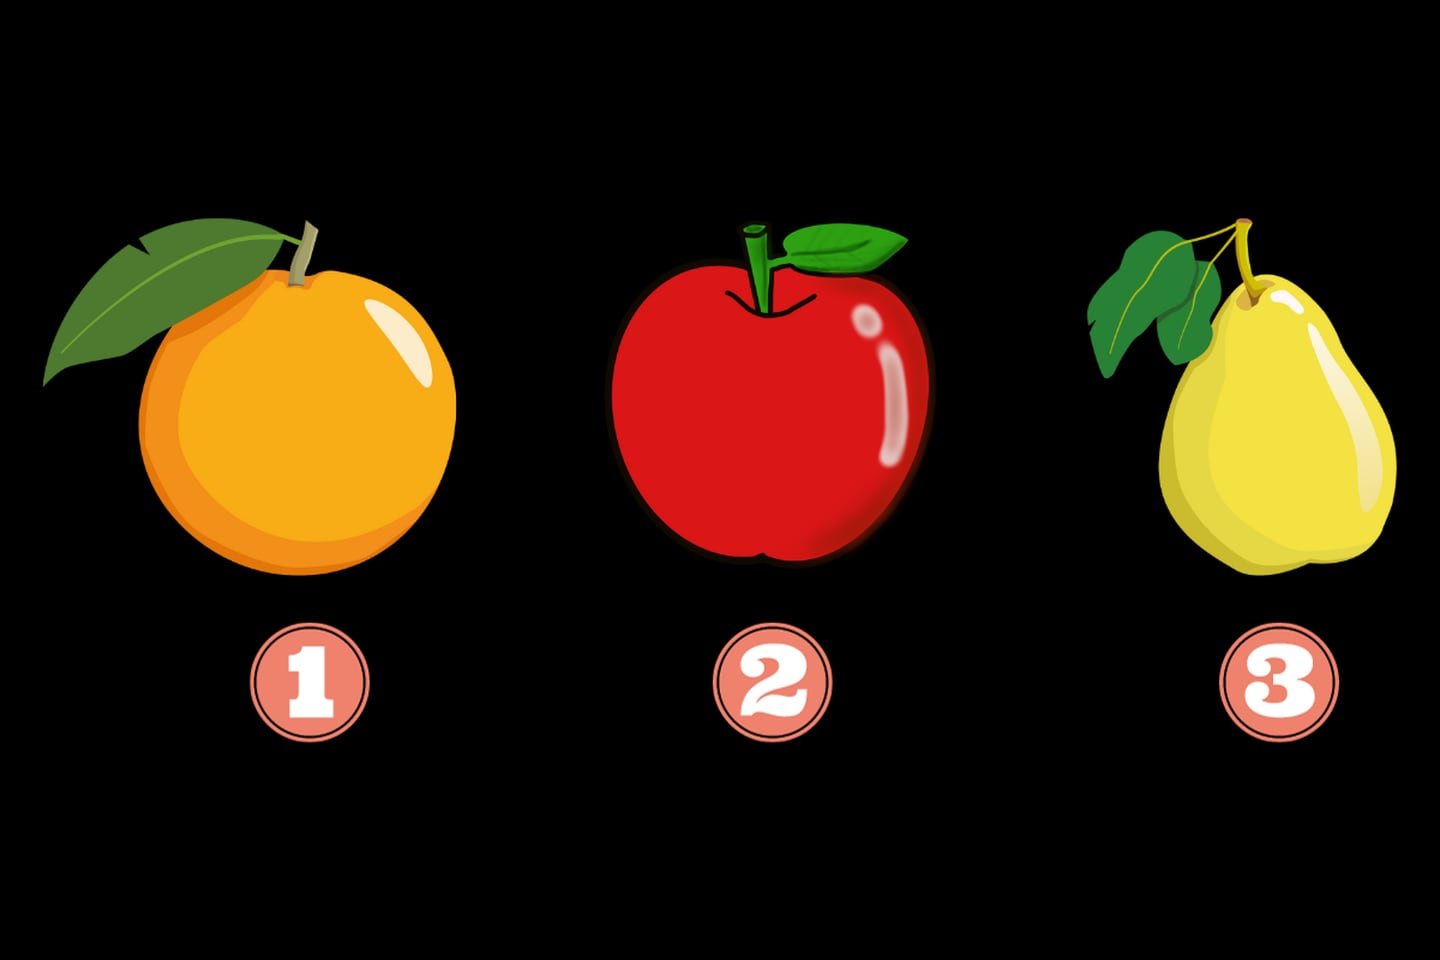 En este test de personalidad hay tres opciones: una naranja, una manzana y una pera.